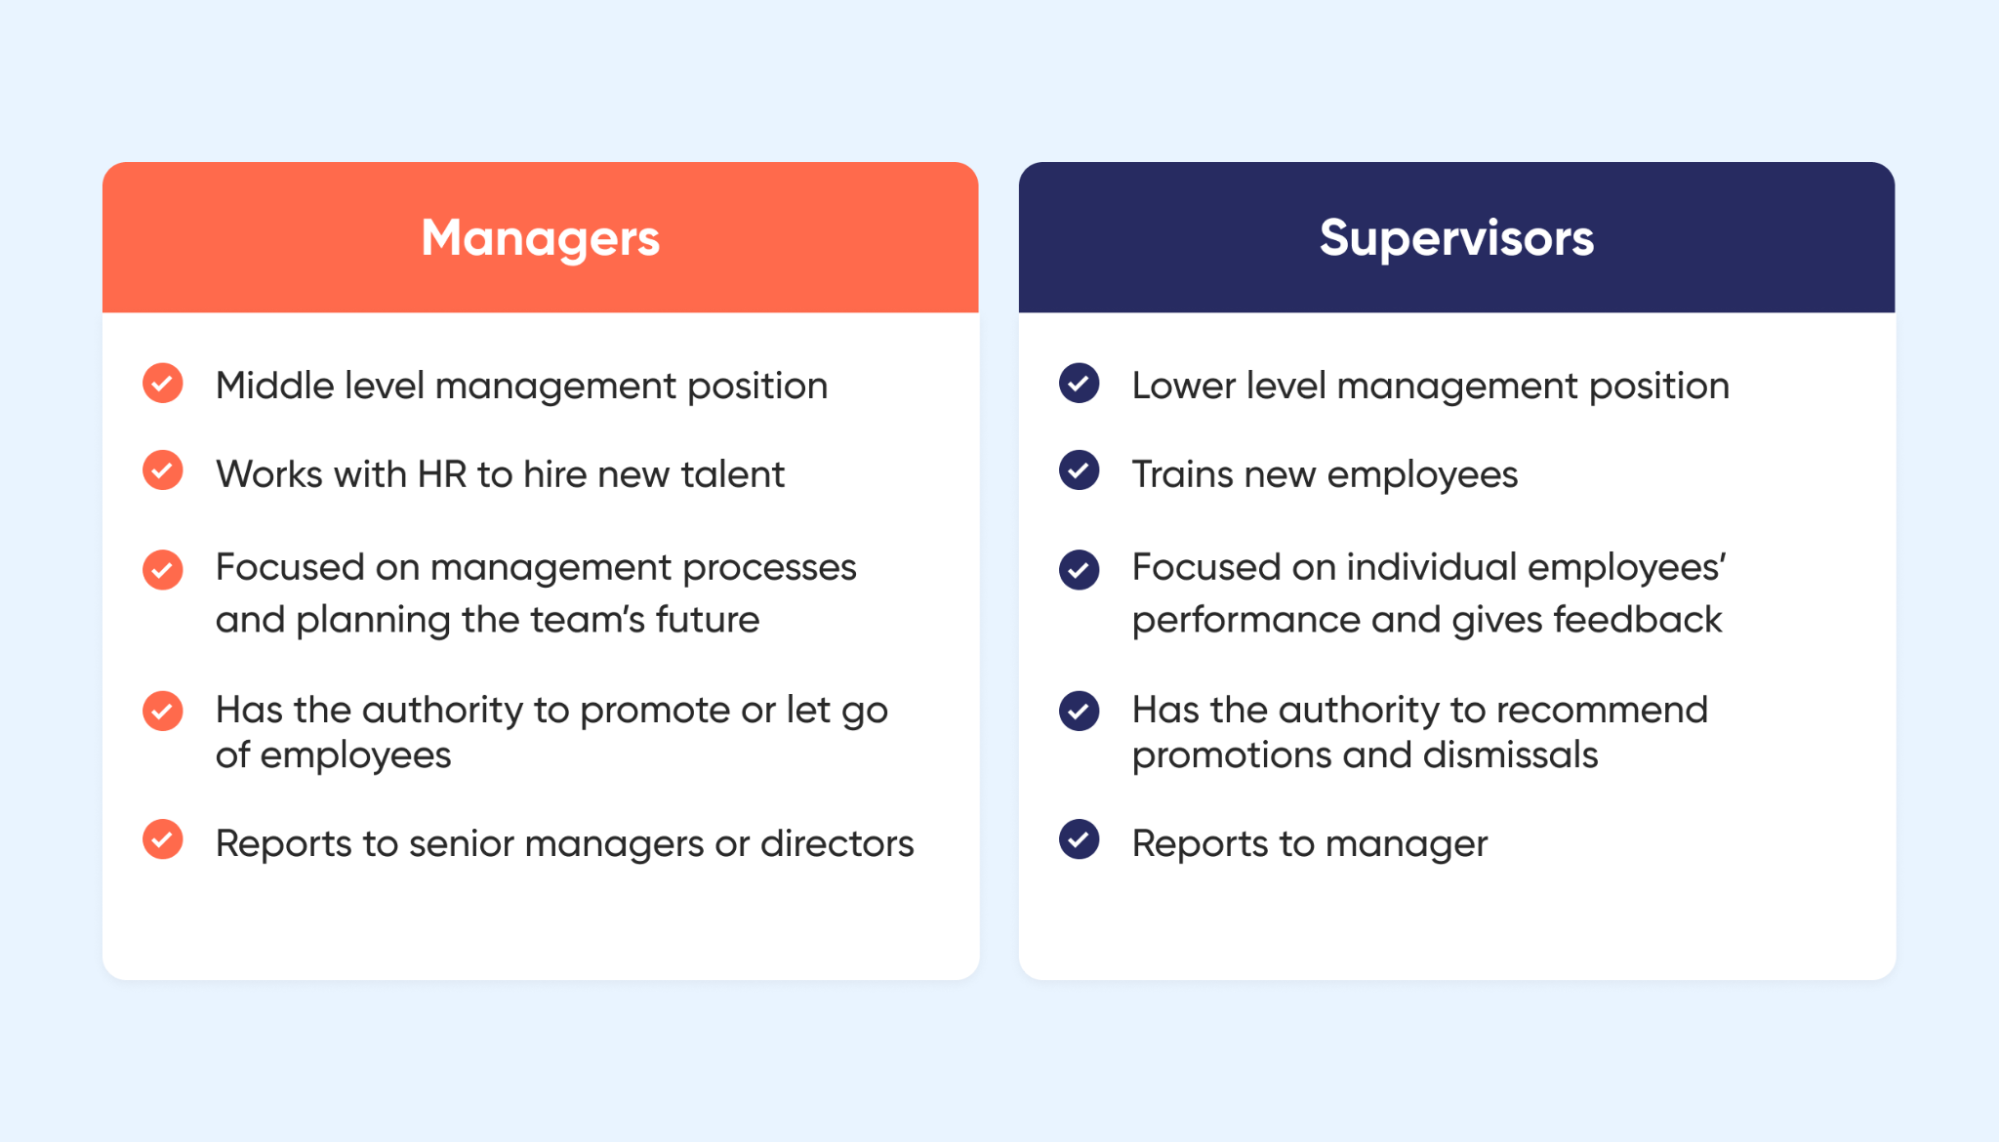 En gerente vs. supervisor, descubra qué diferencias importan